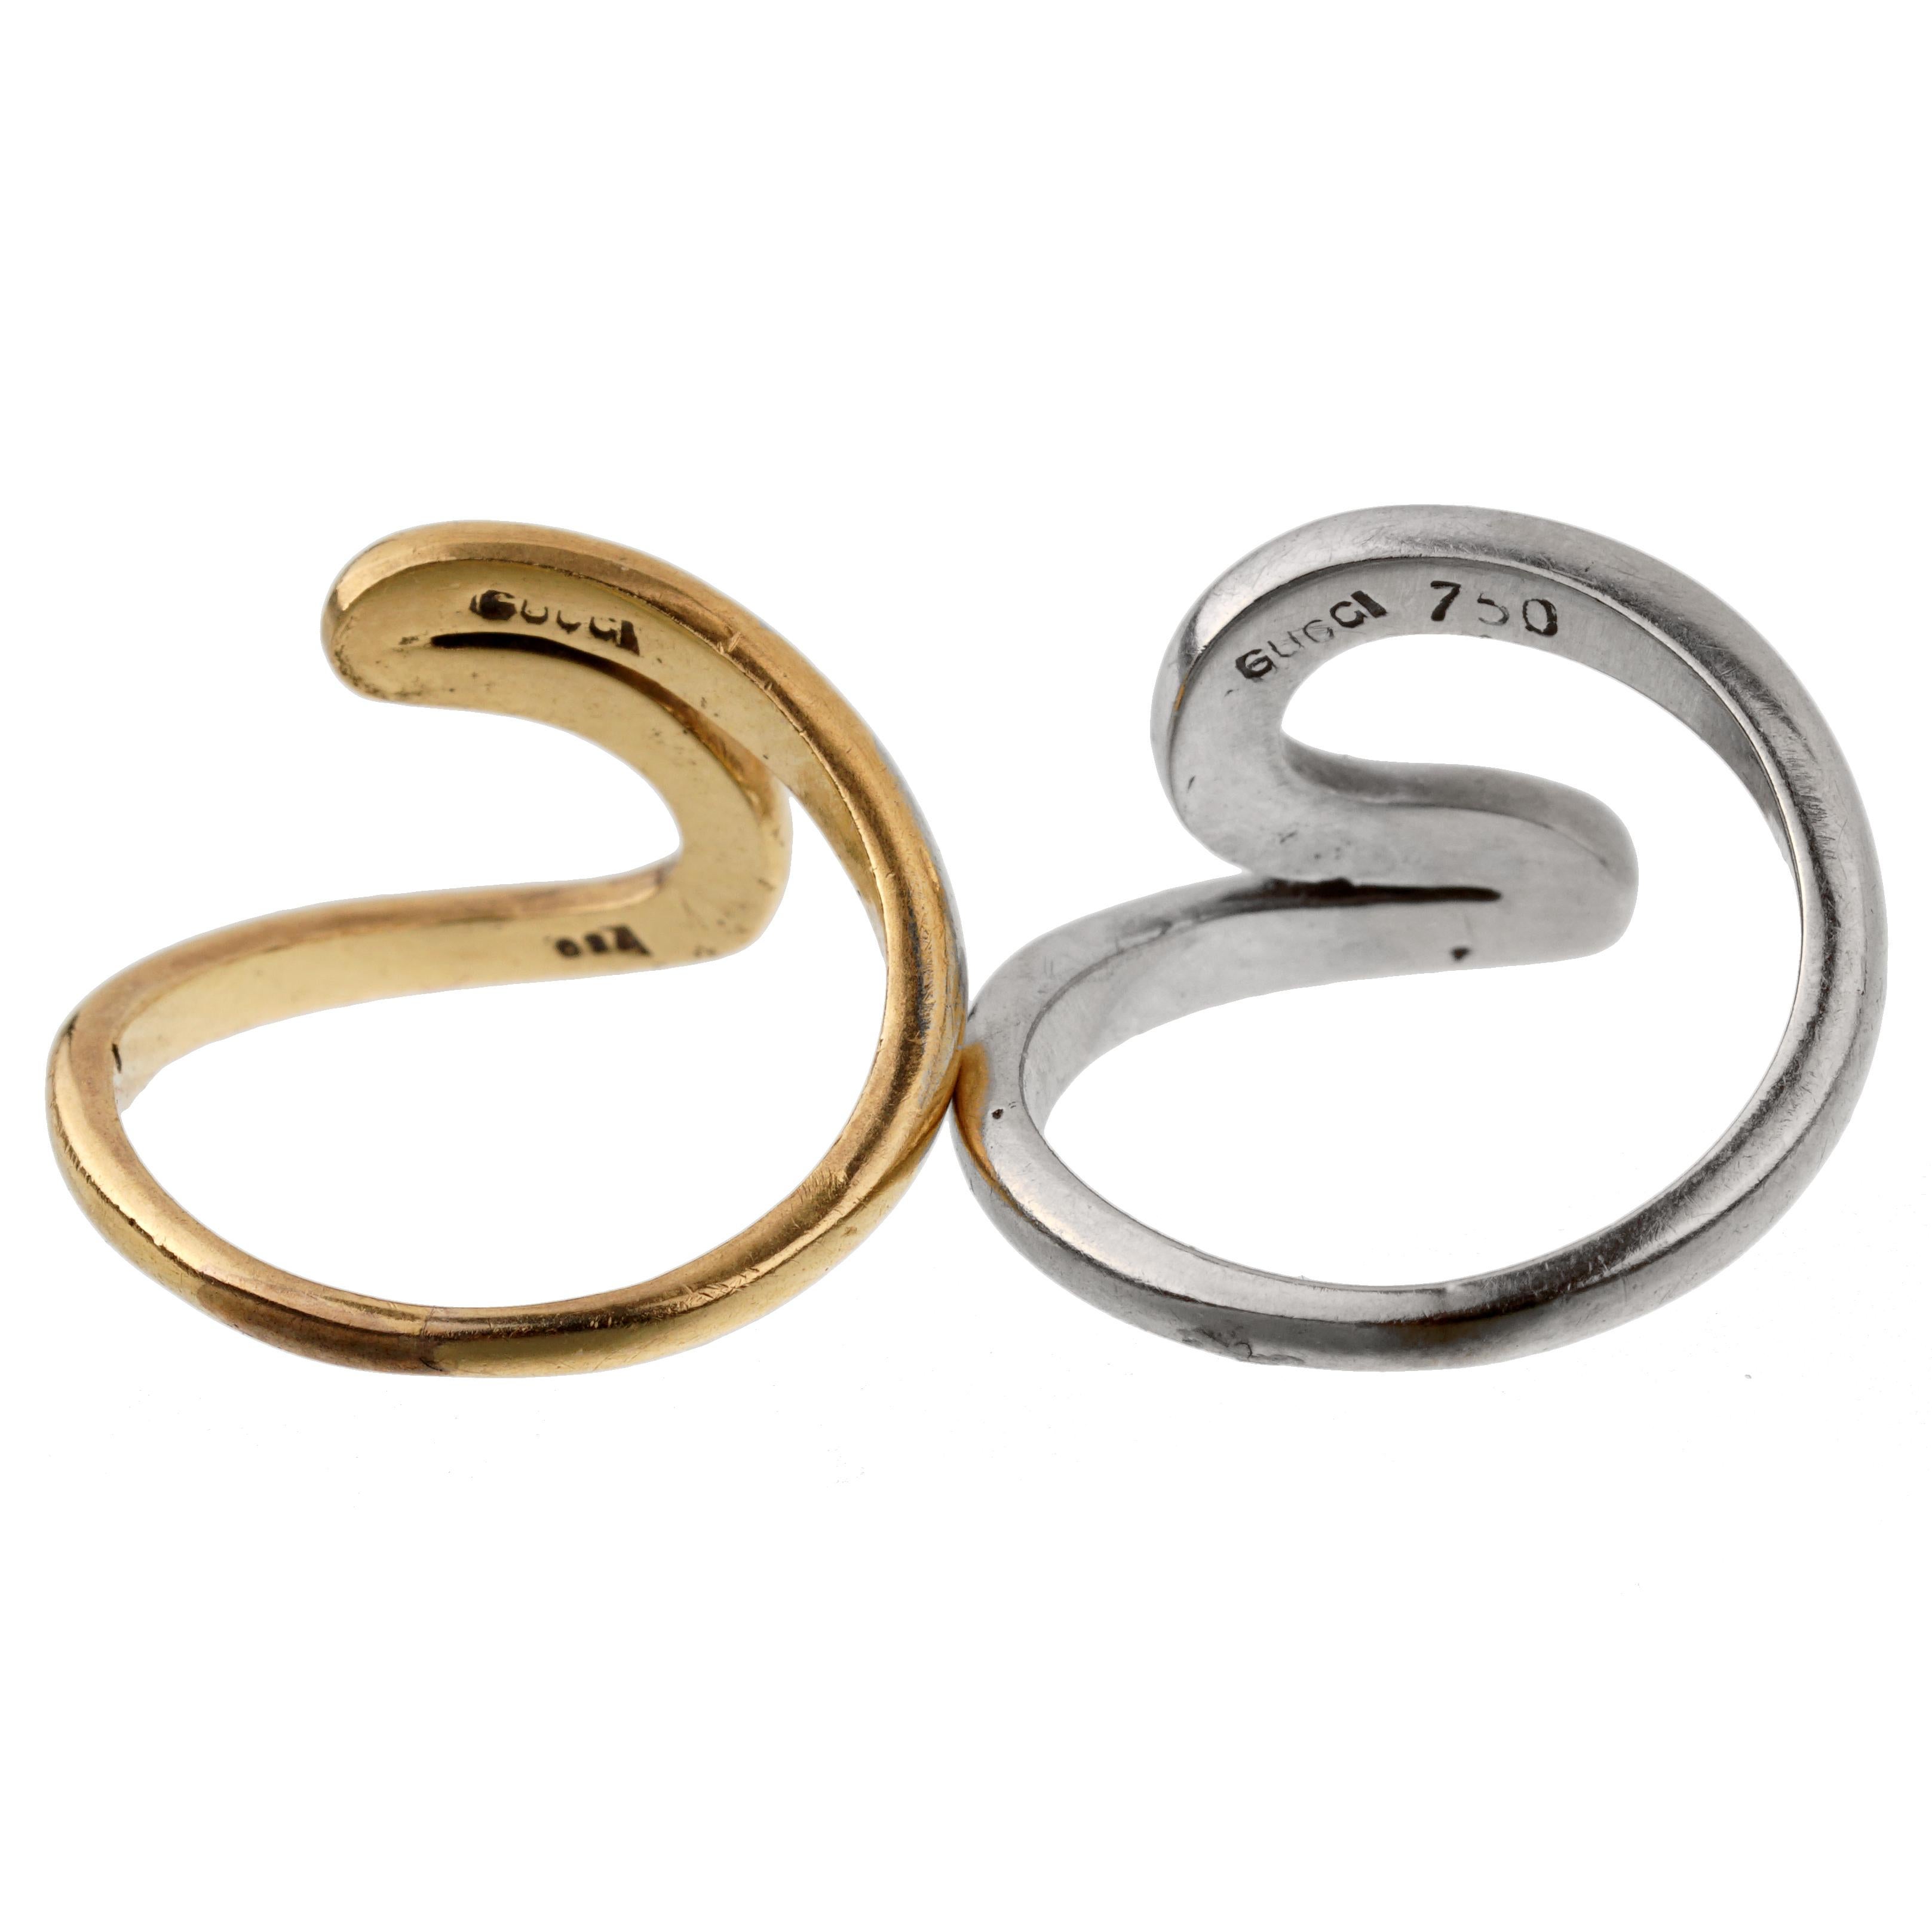 Eine Reihe von Vintage Gucci Wirbel Ringe ein in 18k Gelbgold und ein in 18k Weißgold. Die Ringe können zusammen oder einzeln getragen werden. Die Ringe haben die Größe 3 1/4 und können bei Bedarf in der Größe angepasst werden.